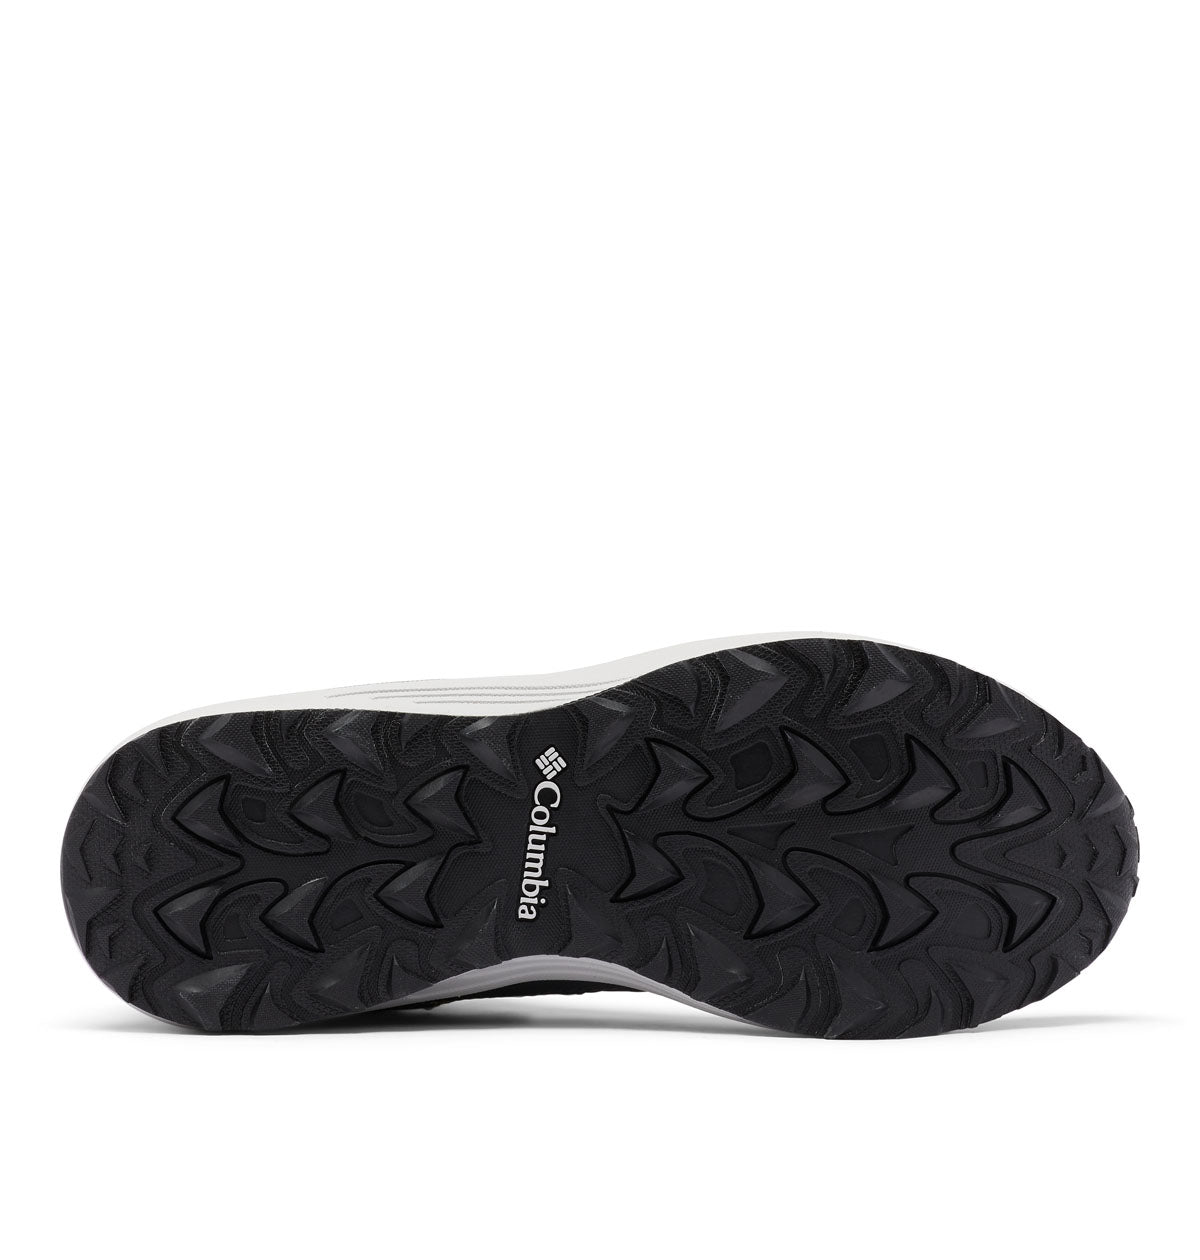 Men's Trailstorm™ Mid Waterproof Shoe